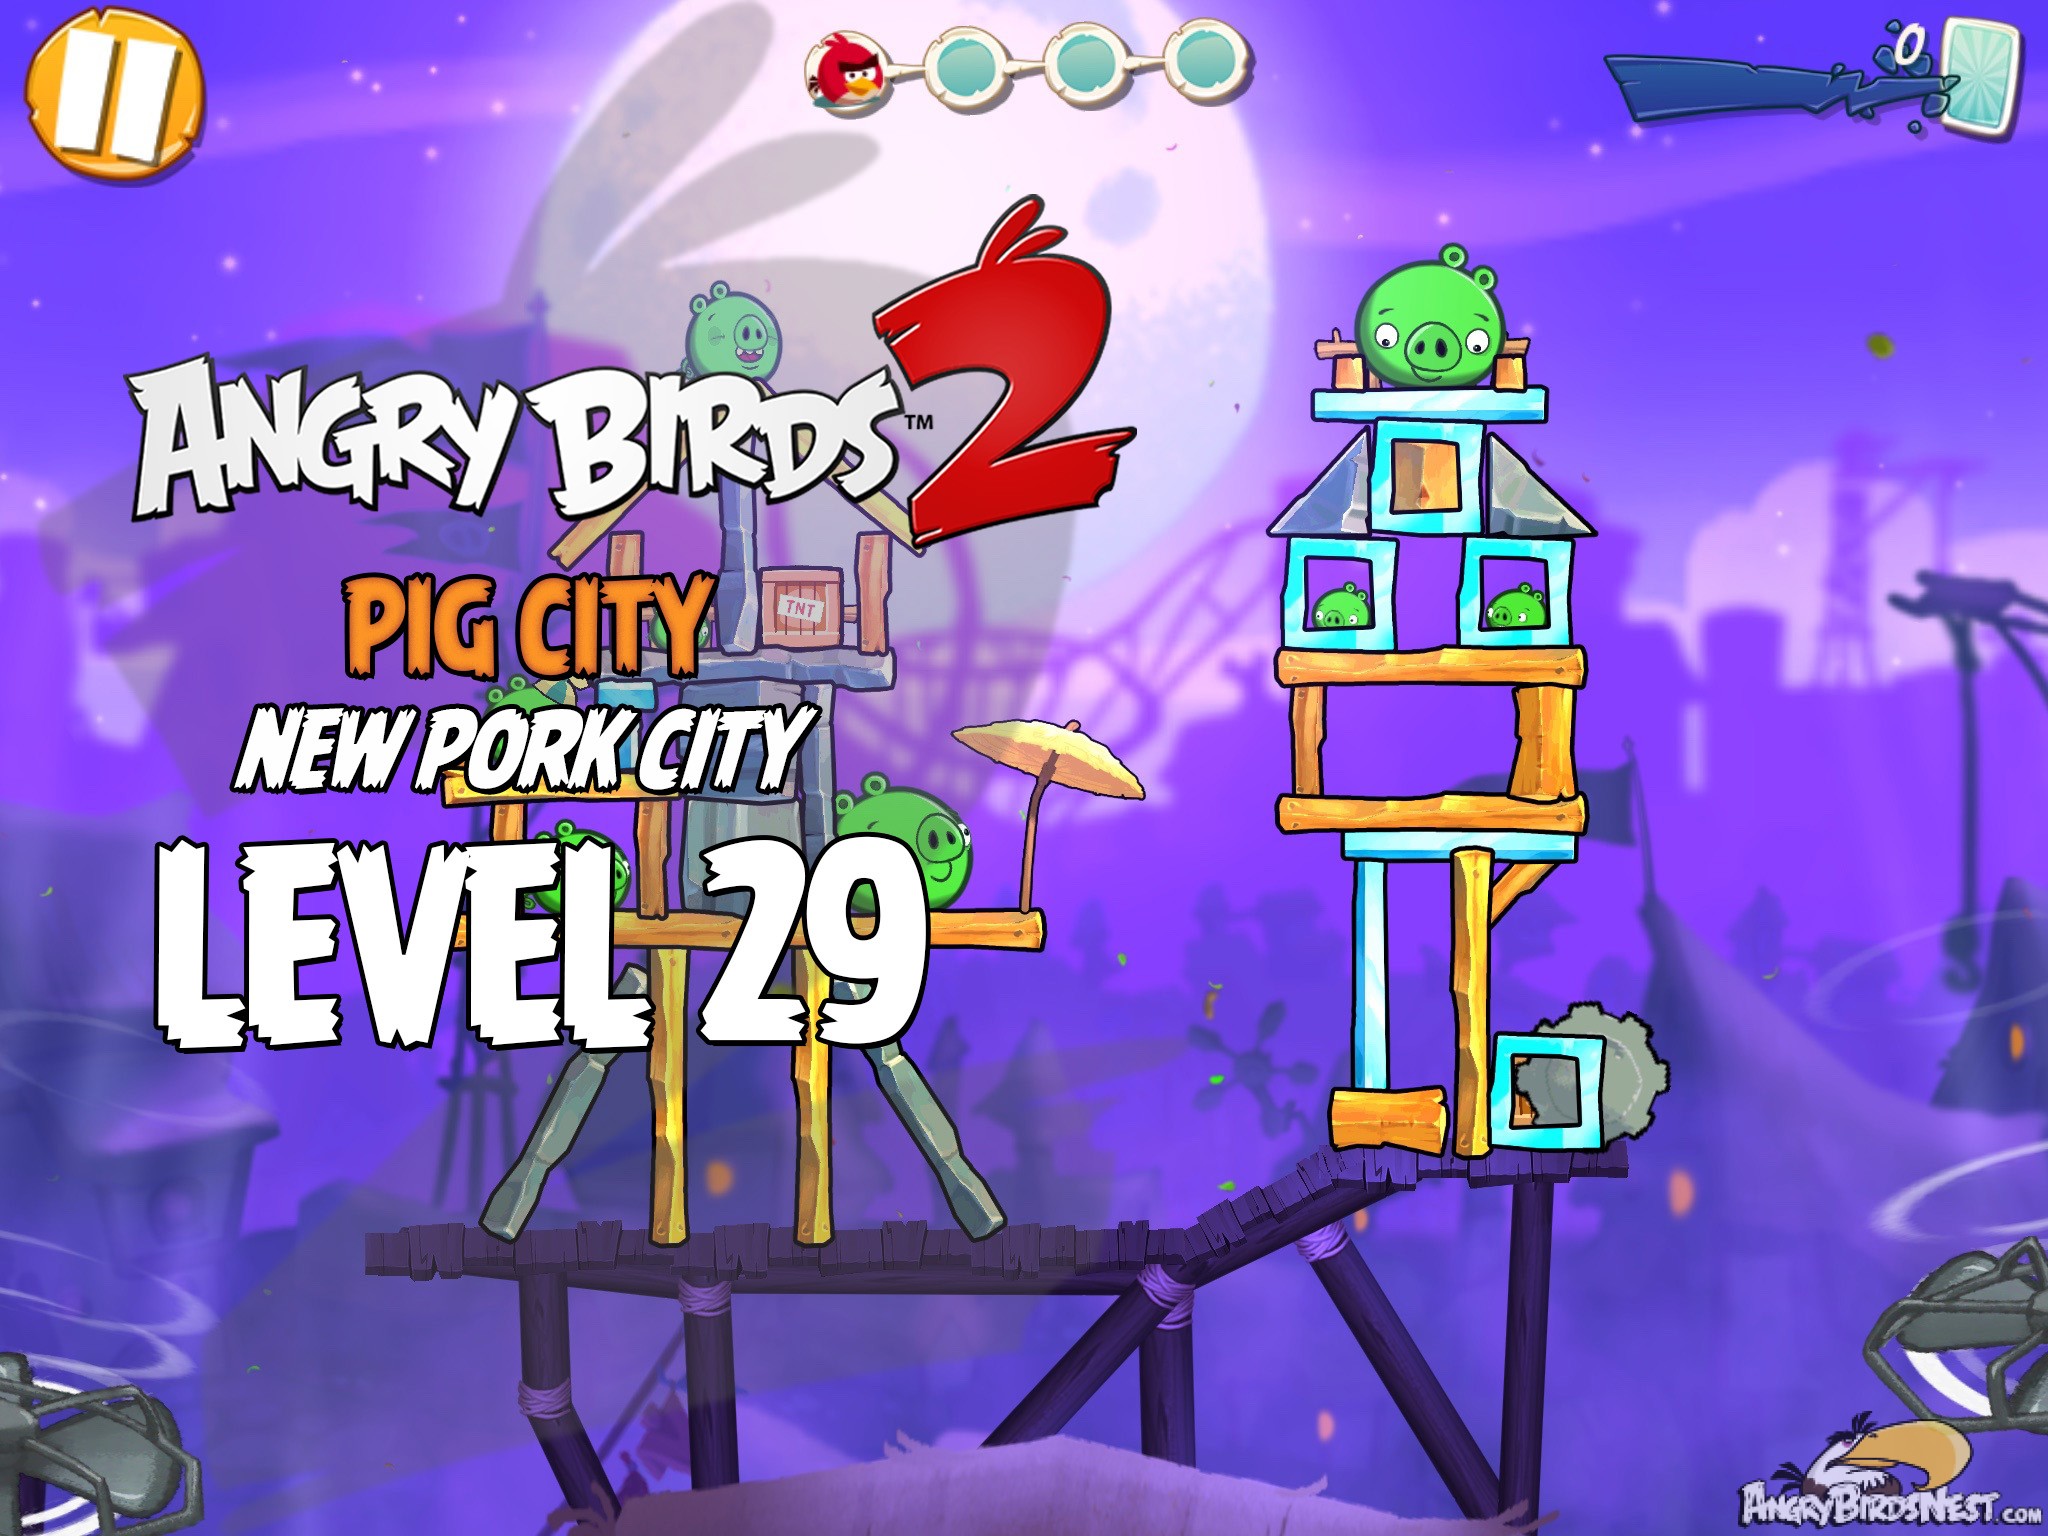 Angry Birds 2 Pig City New Pork City Level 29